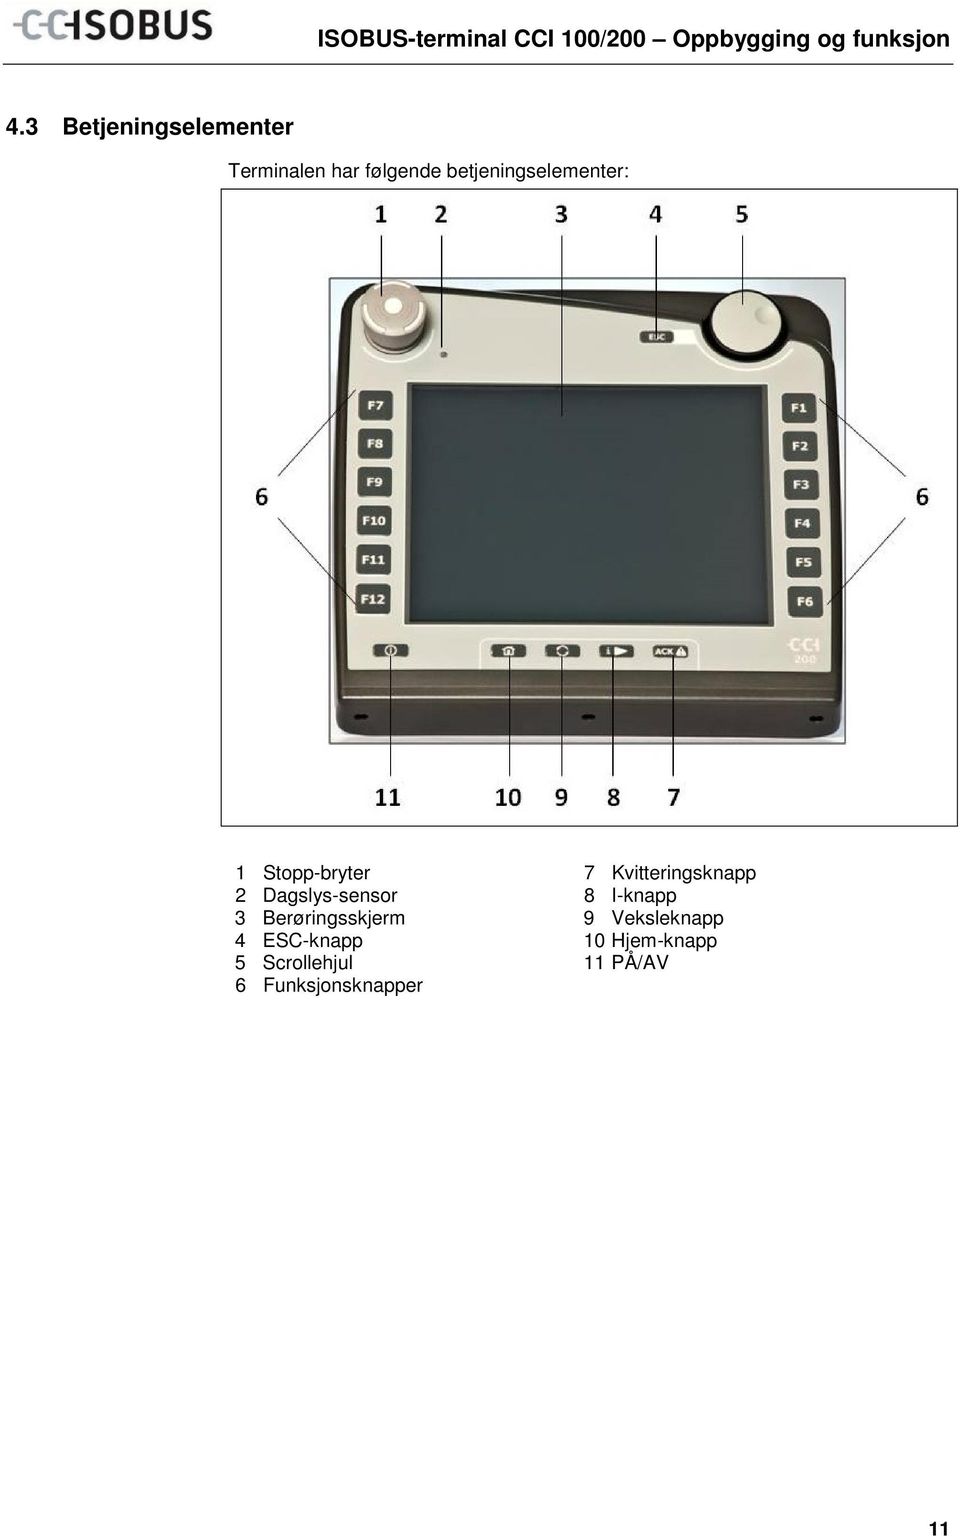 Stopp-bryter 2 Dagslys-sensor 3 Berøringsskjerm 4 ESC-knapp 5